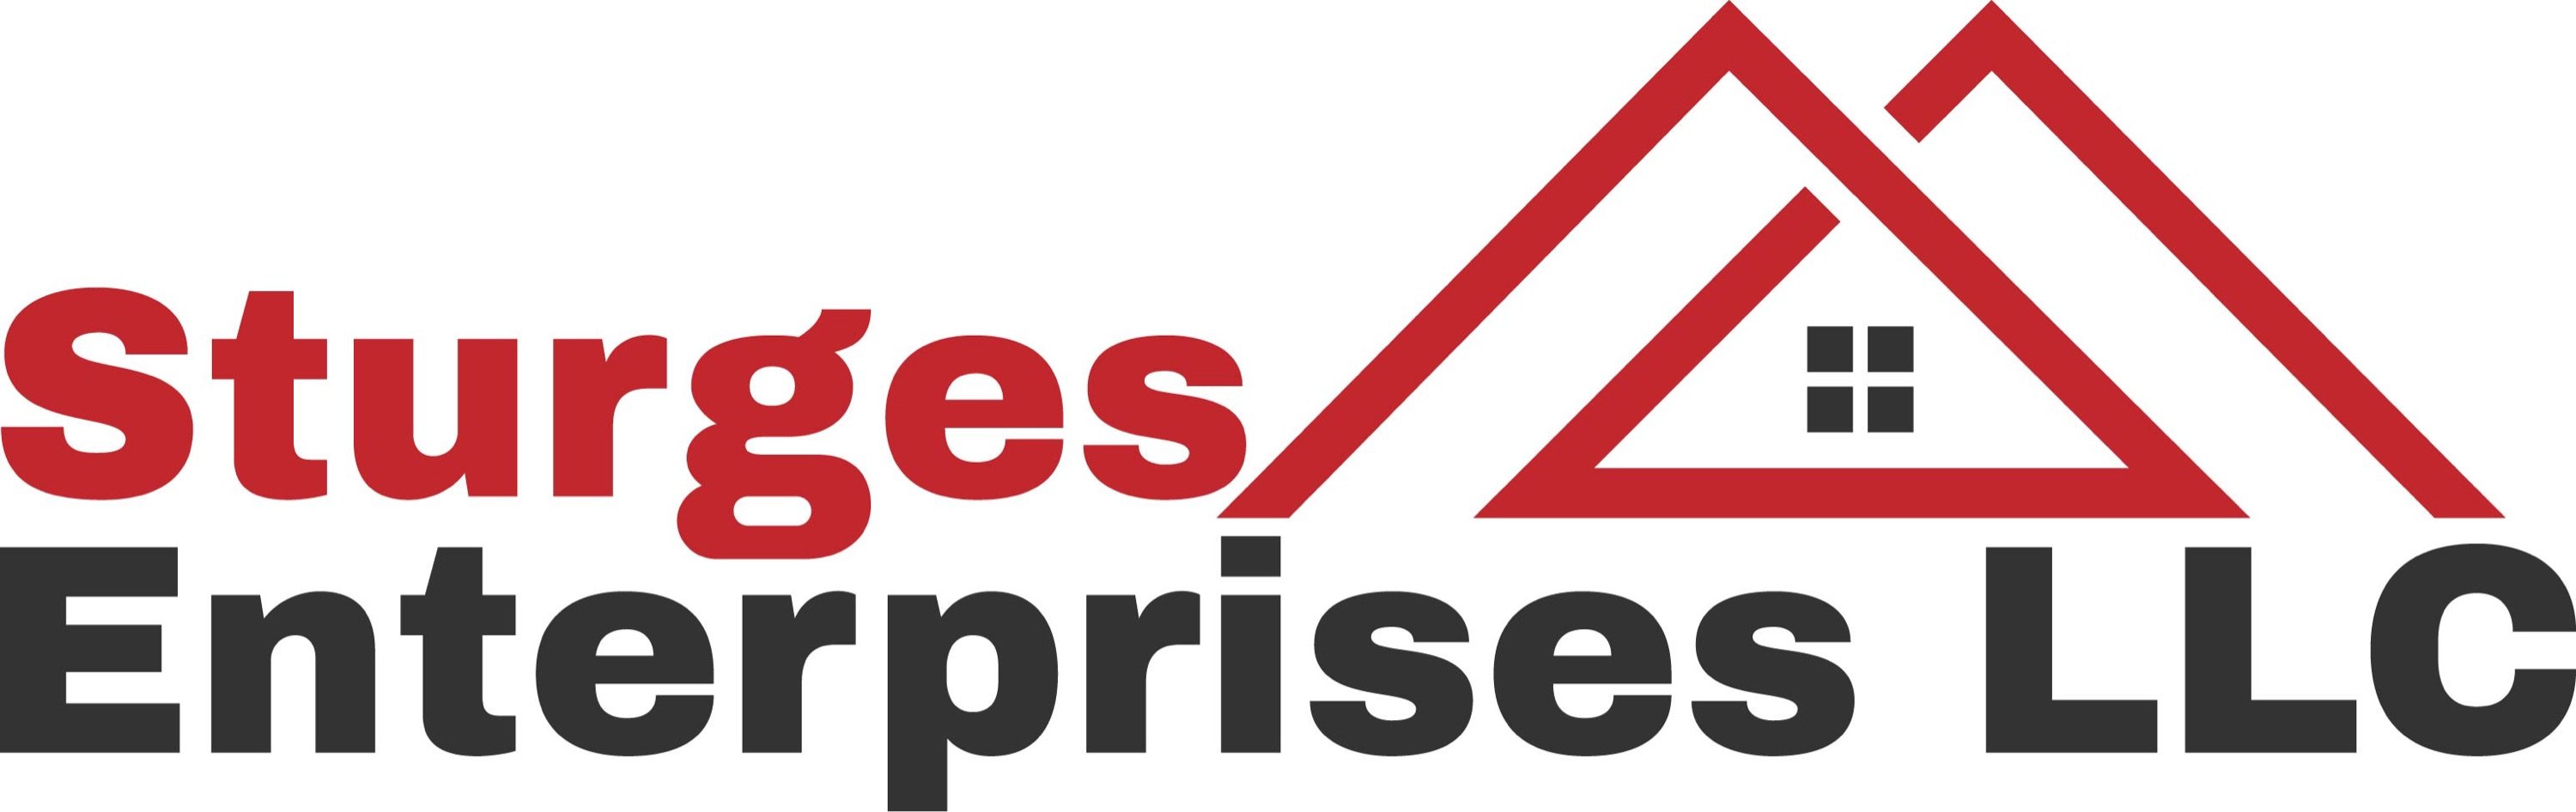 Sturges Enterprises Logo